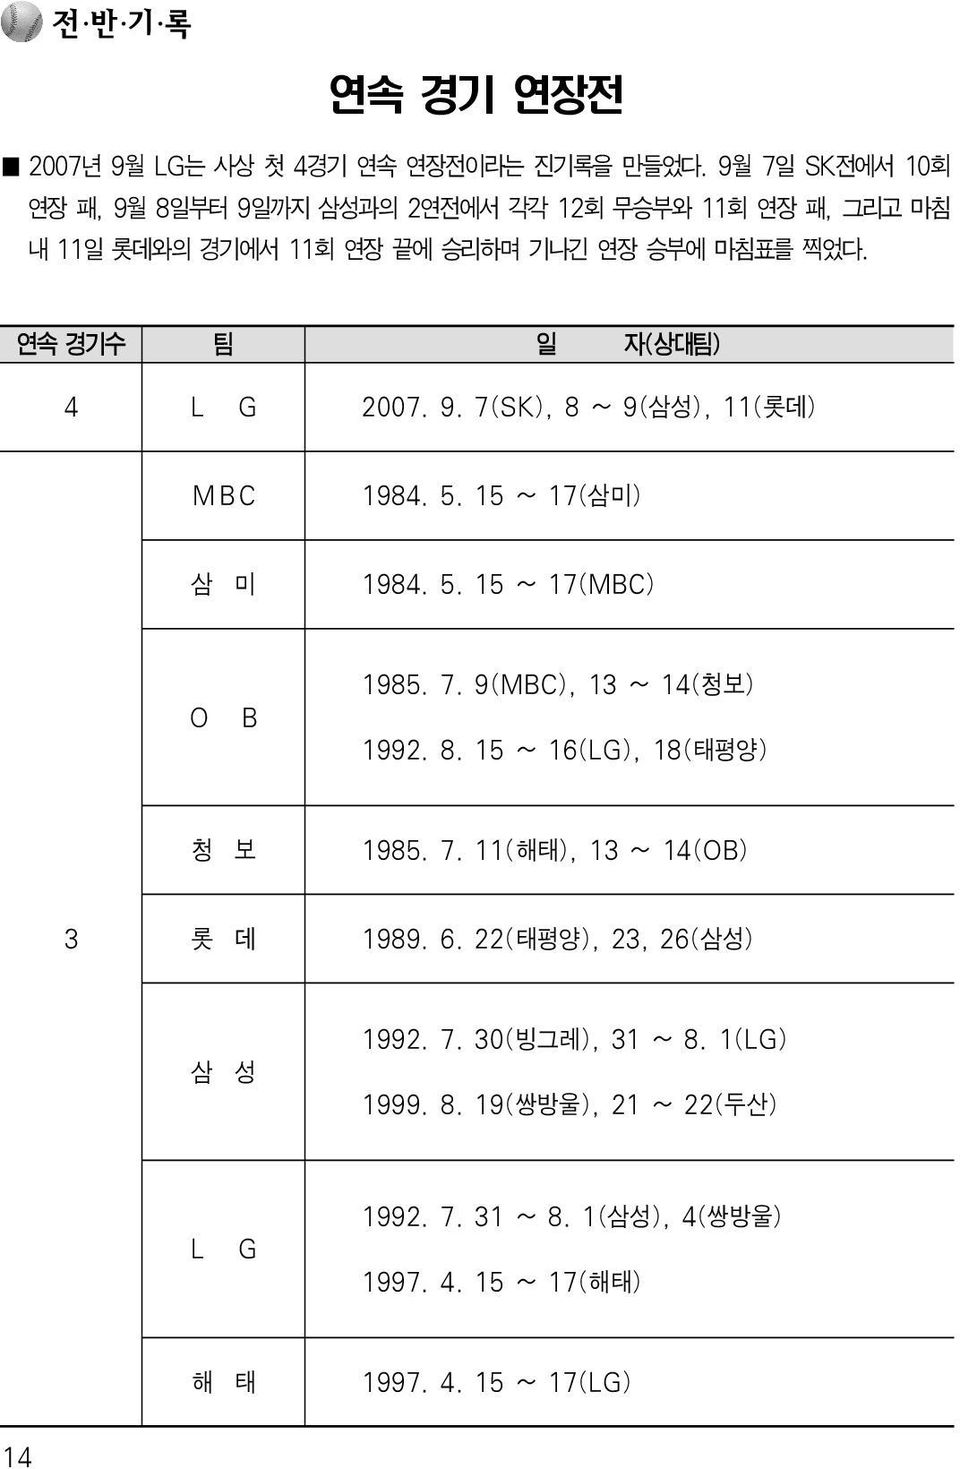 연속 경기수 팀 일 자(상대팀) 4 L G 2007. 9. 7(SK), 8 ~ 9(삼성), 11(롯데) MBC 1984. 5. 15 ~ 17(삼미) 삼 미 1984. 5. 15 ~ 17(MBC) O B 1985. 7. 9(MBC), 13 ~ 14(청보) 1992.